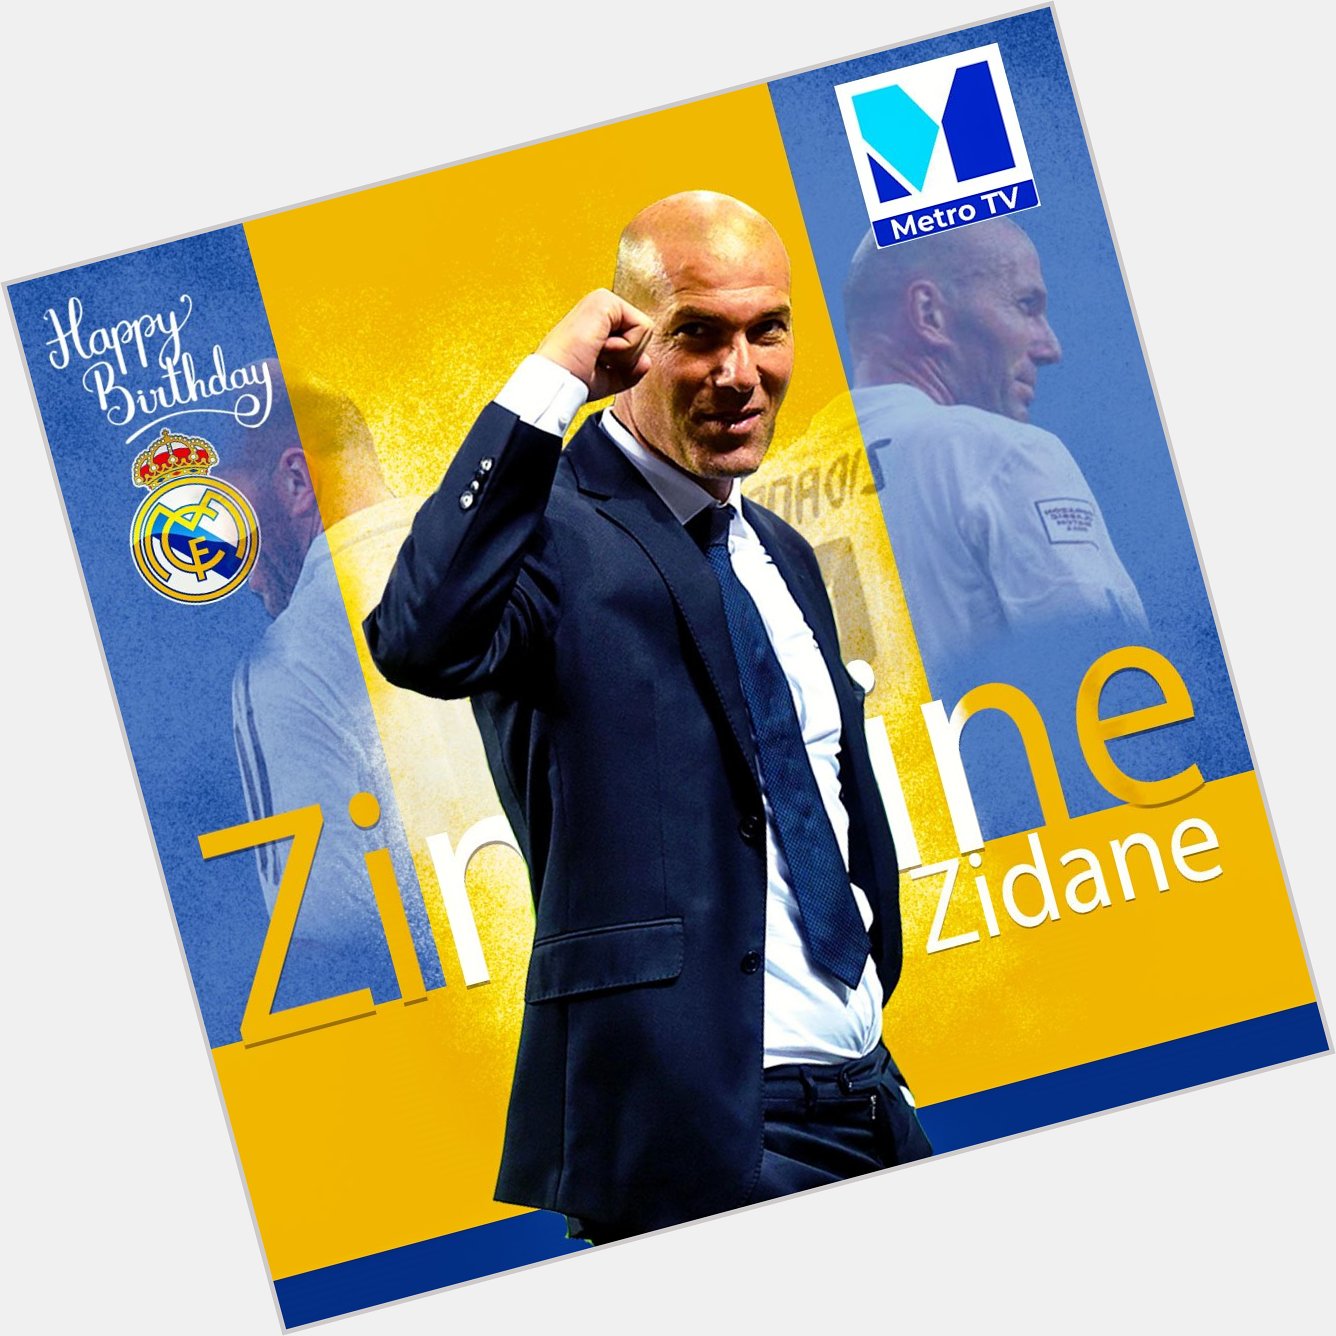 Happy belated 48th Birthday Zinedine Zidane.

We still celebrate you. 